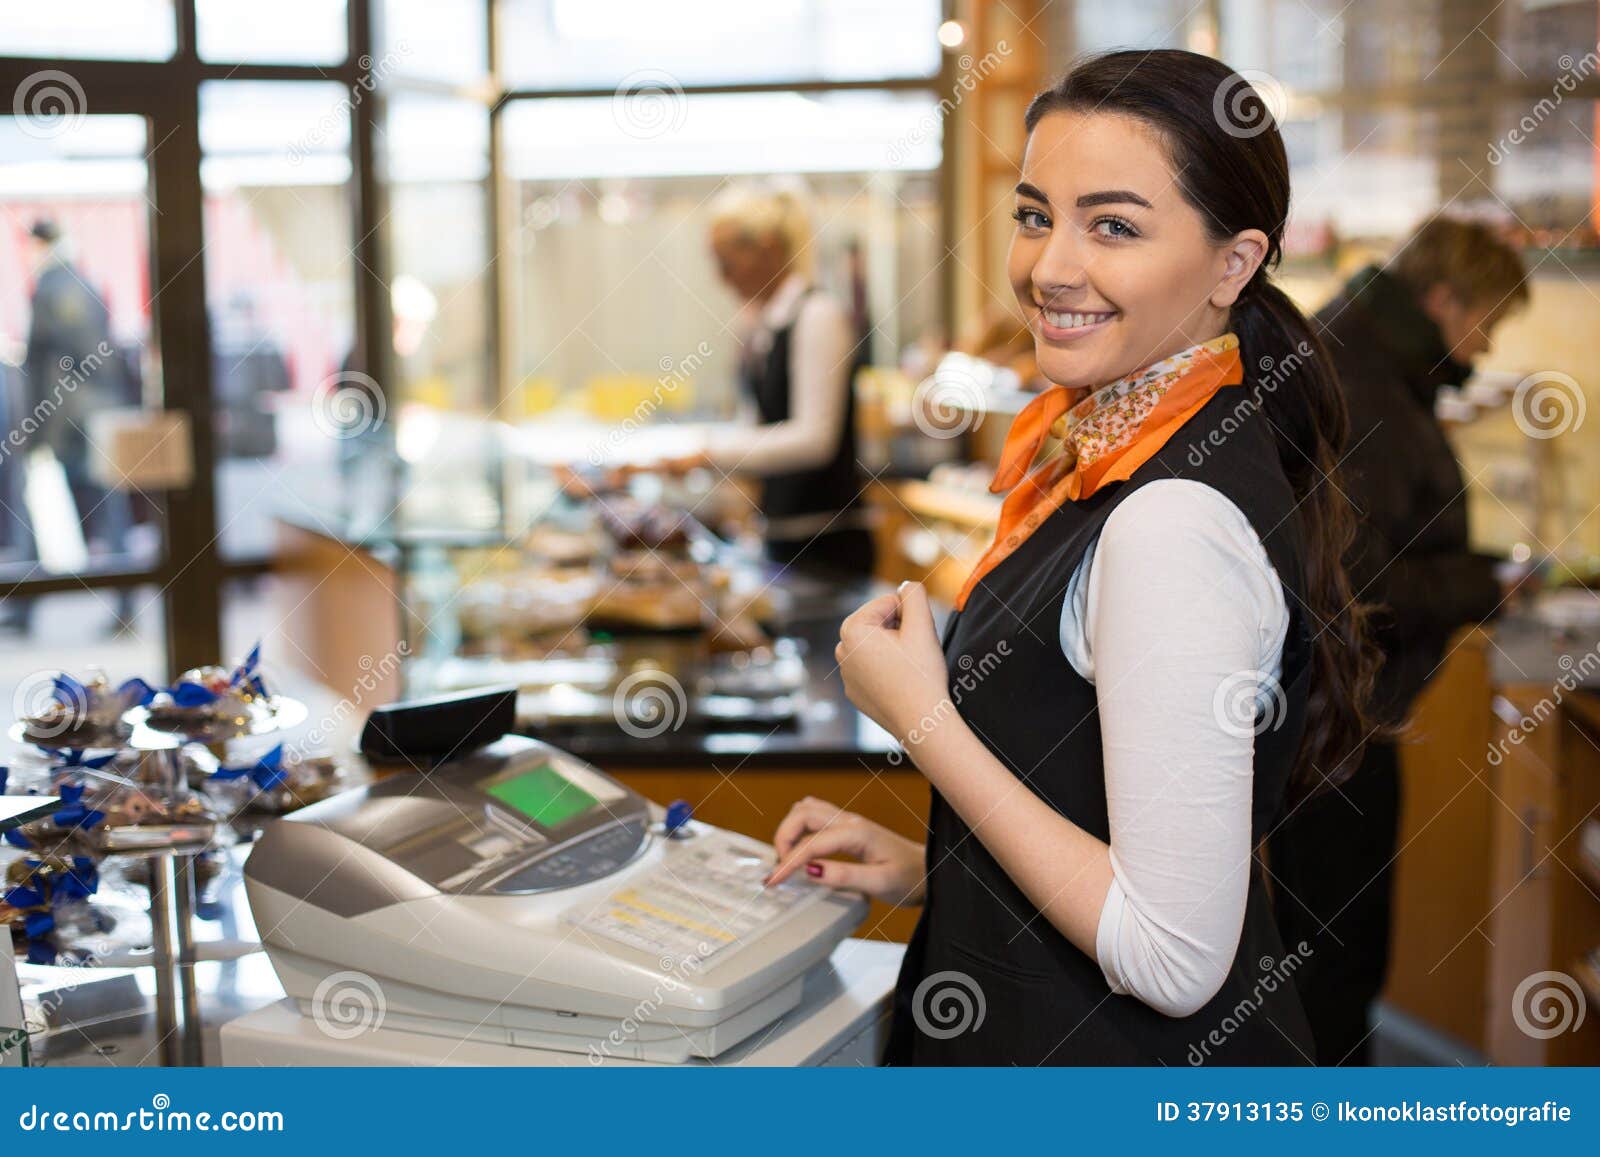 salesperson at cash register